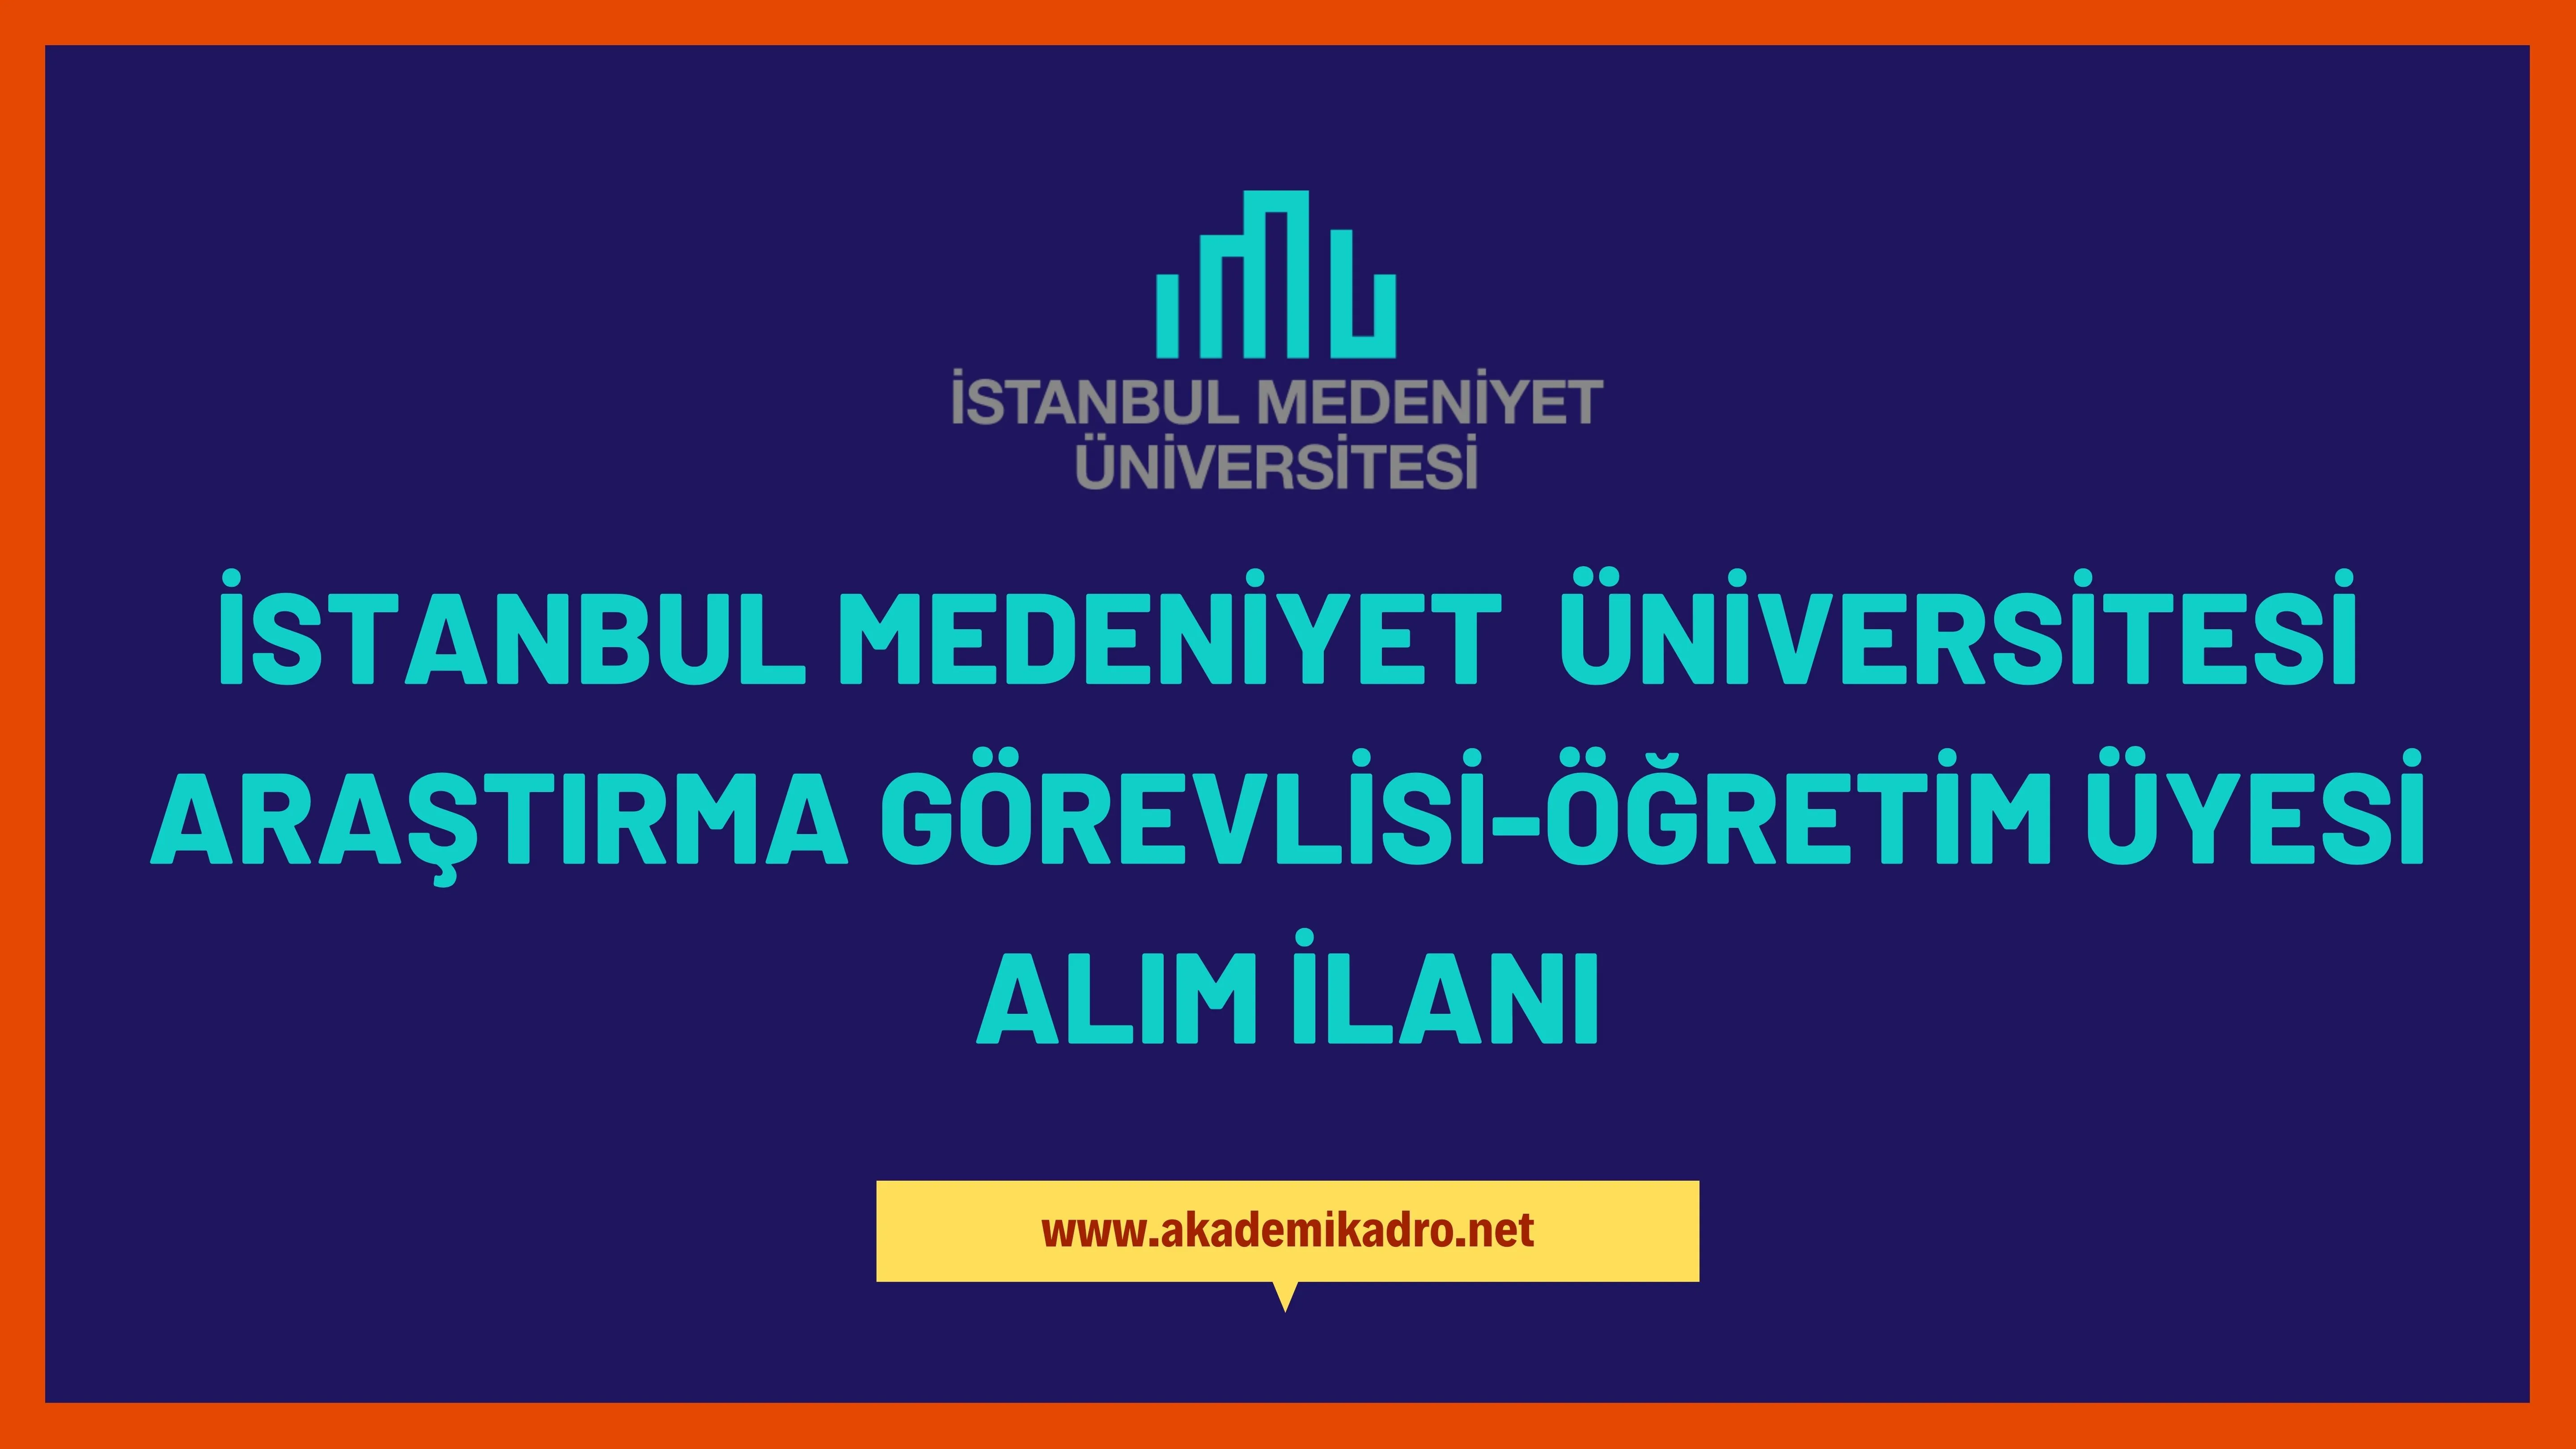 İstanbul Medeniyet Üniversitesi 8 Araştırma görevlisi, 3 Öğretim görevlisi ve 13 Öğretim üyesi alacak.